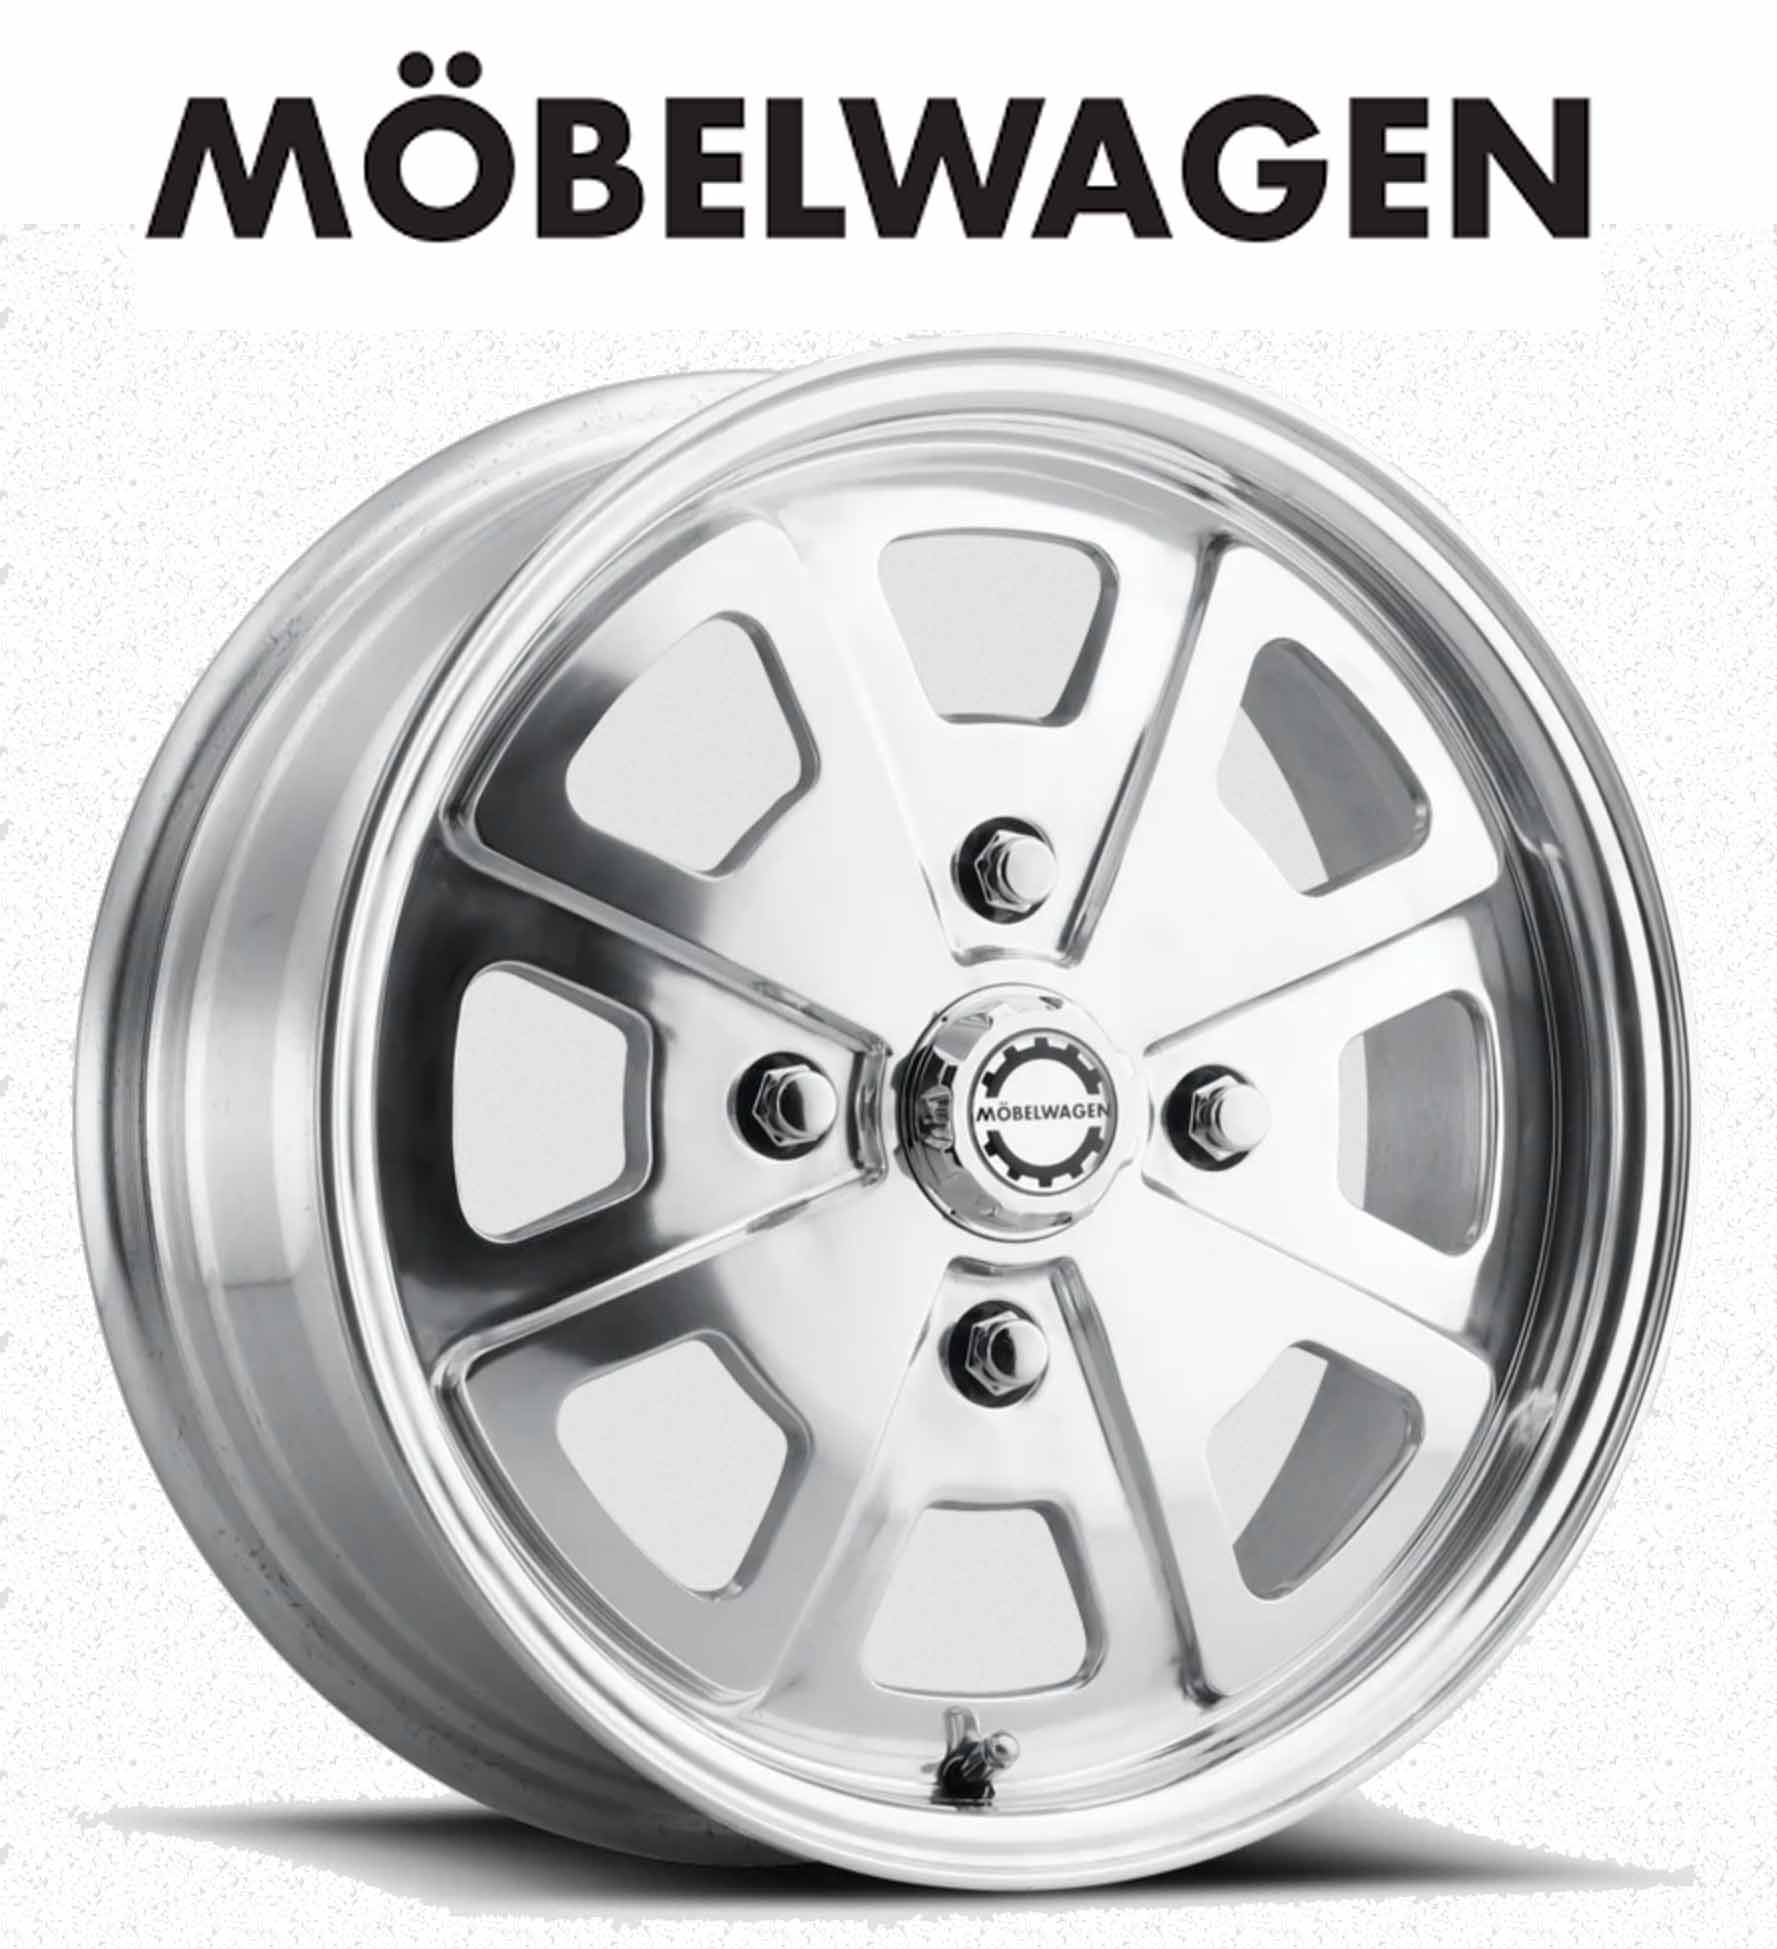 Mobelwagen Wheels